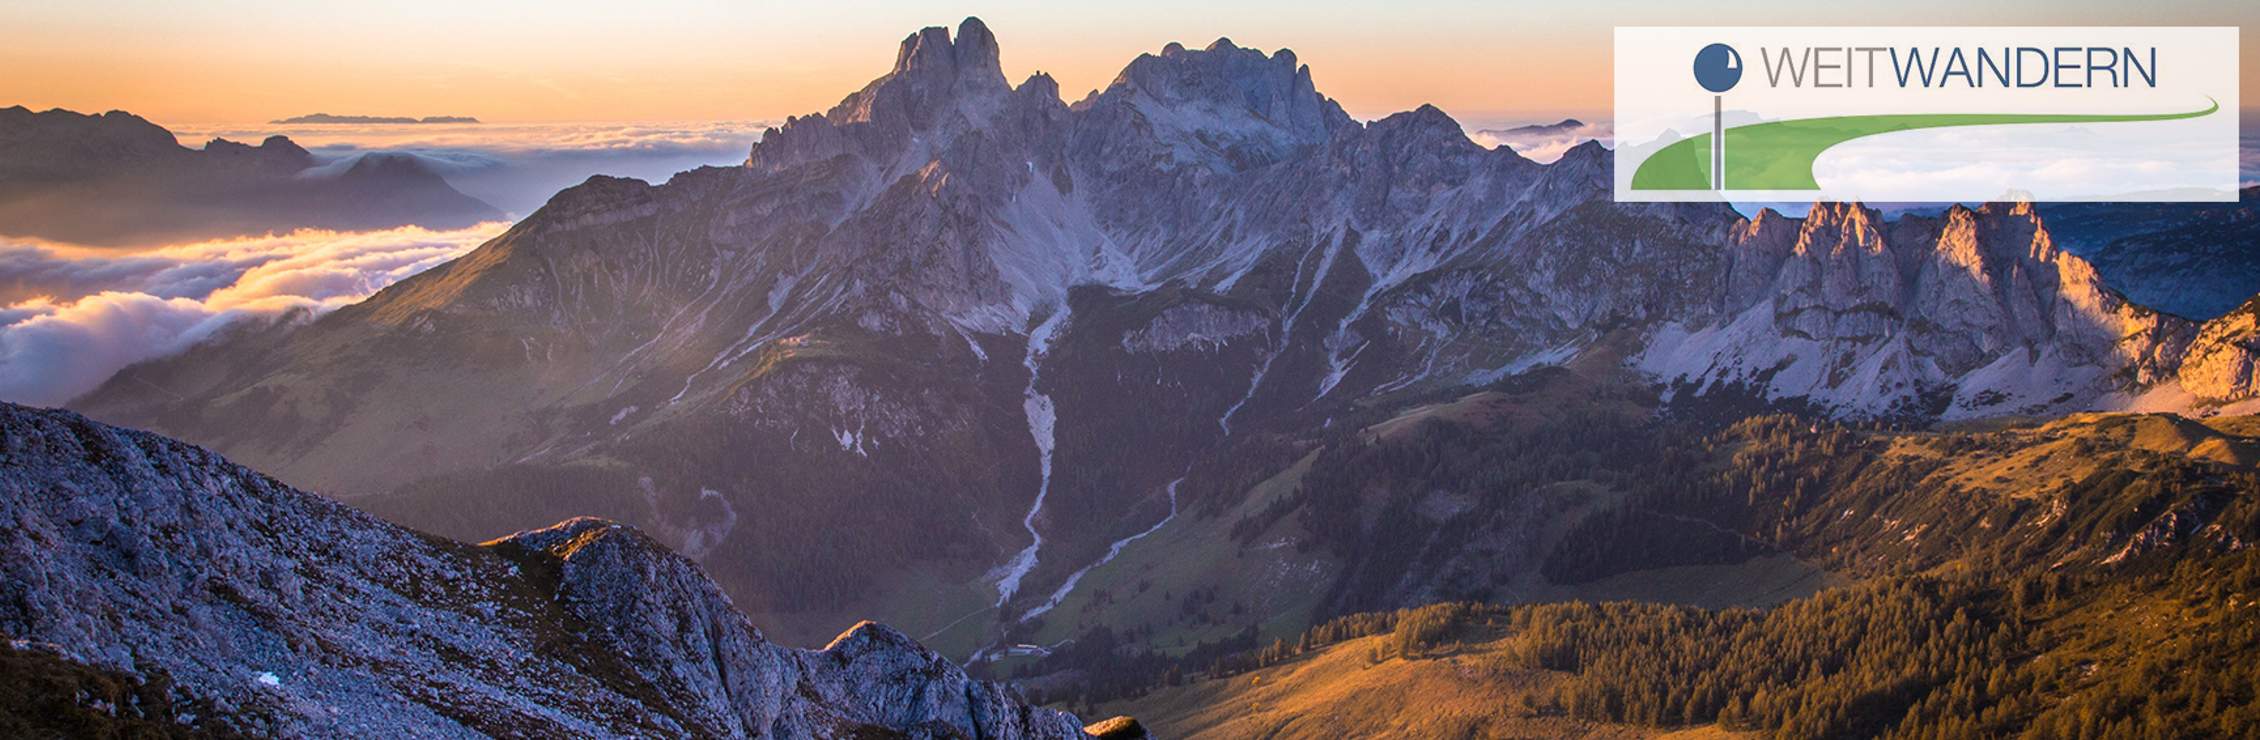 Österreichs Wanderdörfer "Weitwandern" im Südtirol